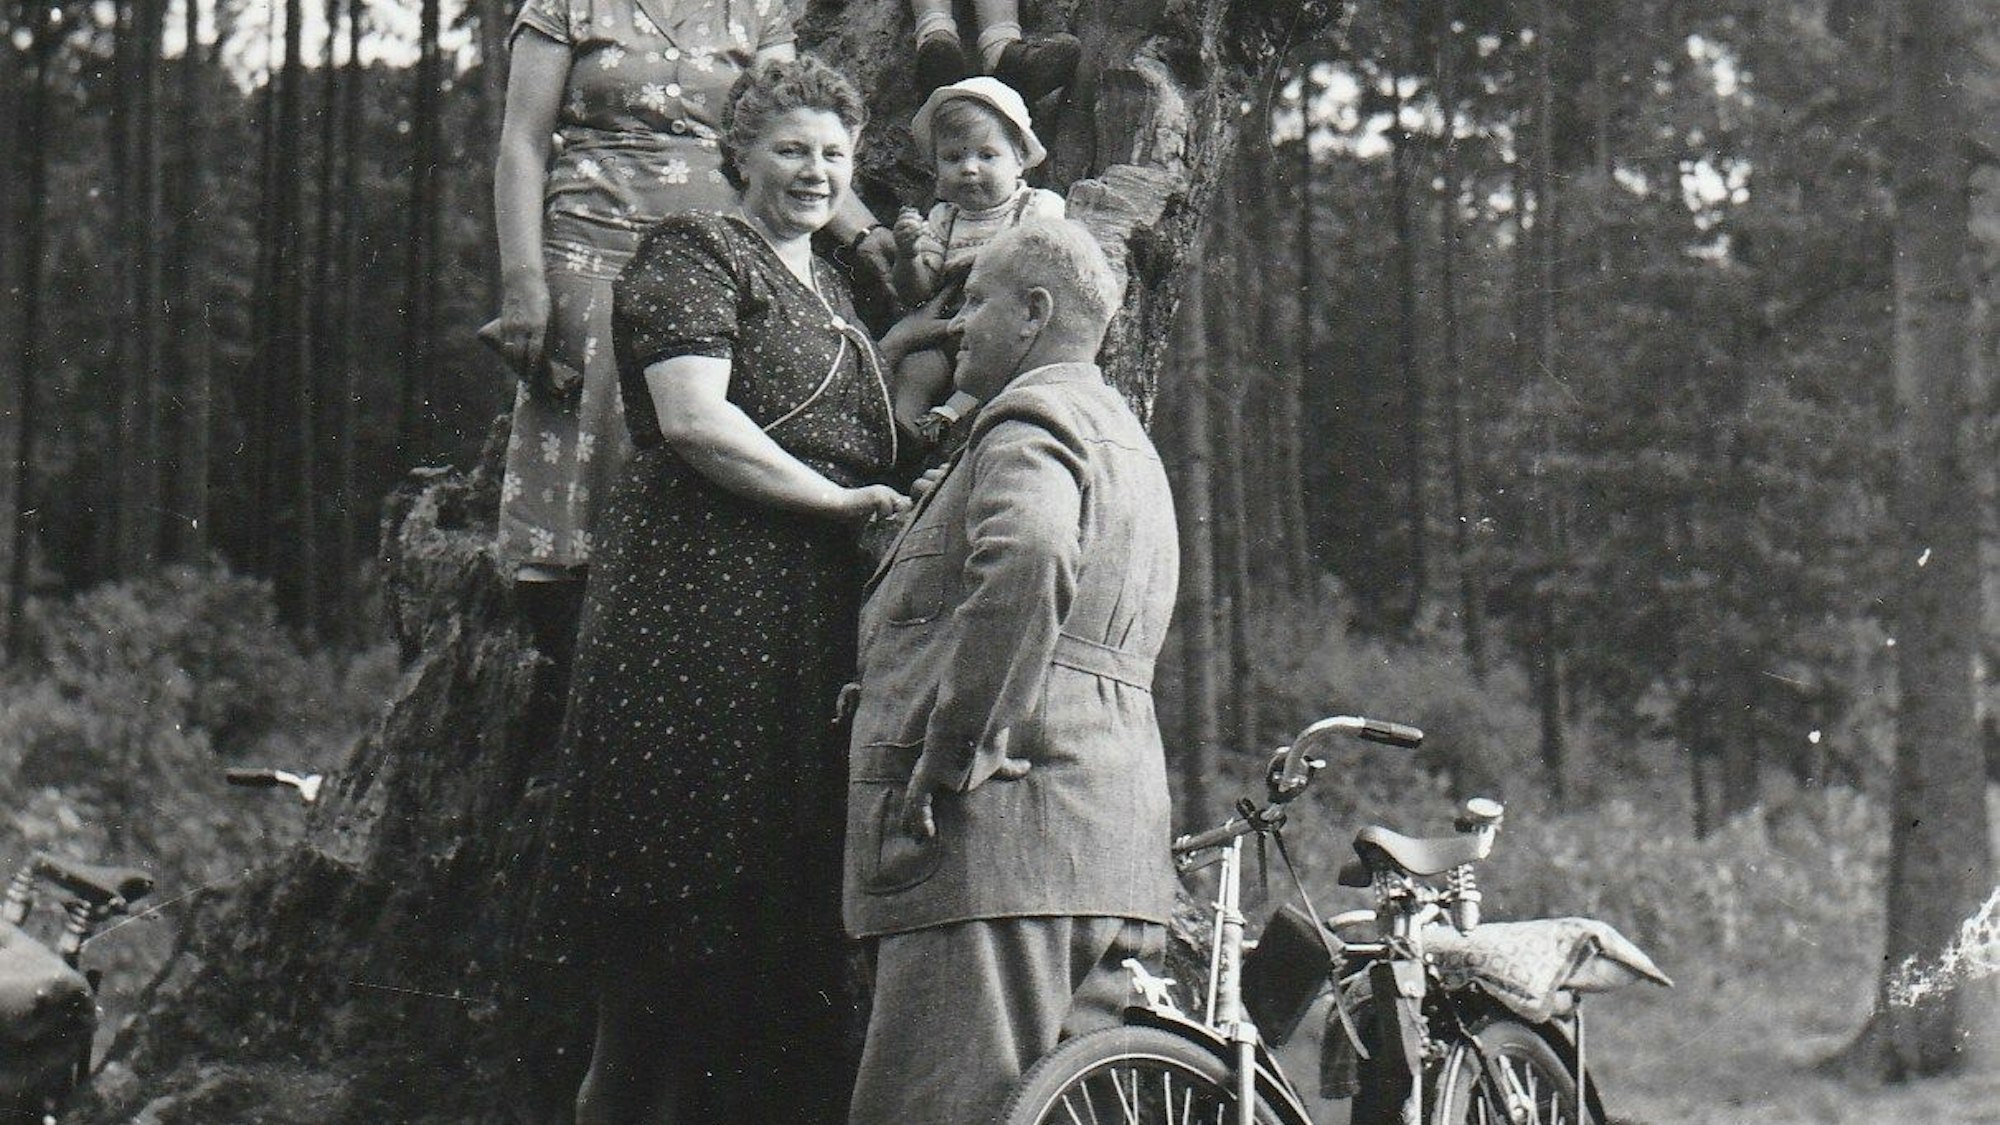 Schwarz/Weiß-Bild einer Familie, vorne ein altes Fahrrad, im Hintergrund ein Kölner Wald